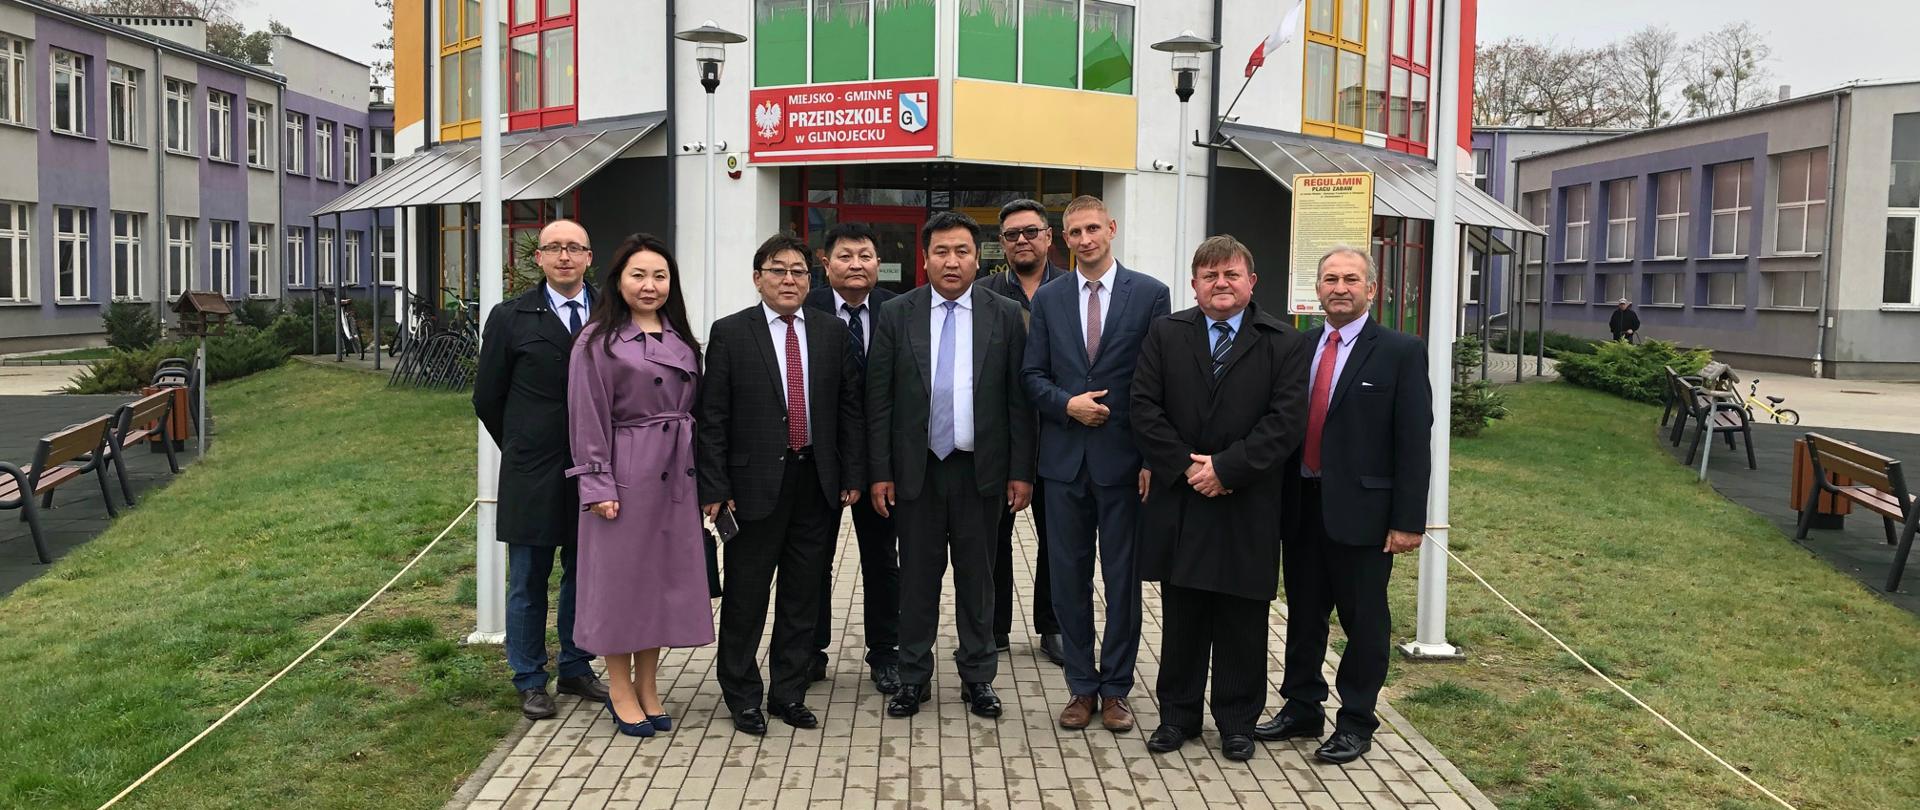 Wizyta delegacji z mongolskiej prowincji Tuv w Glinojecku